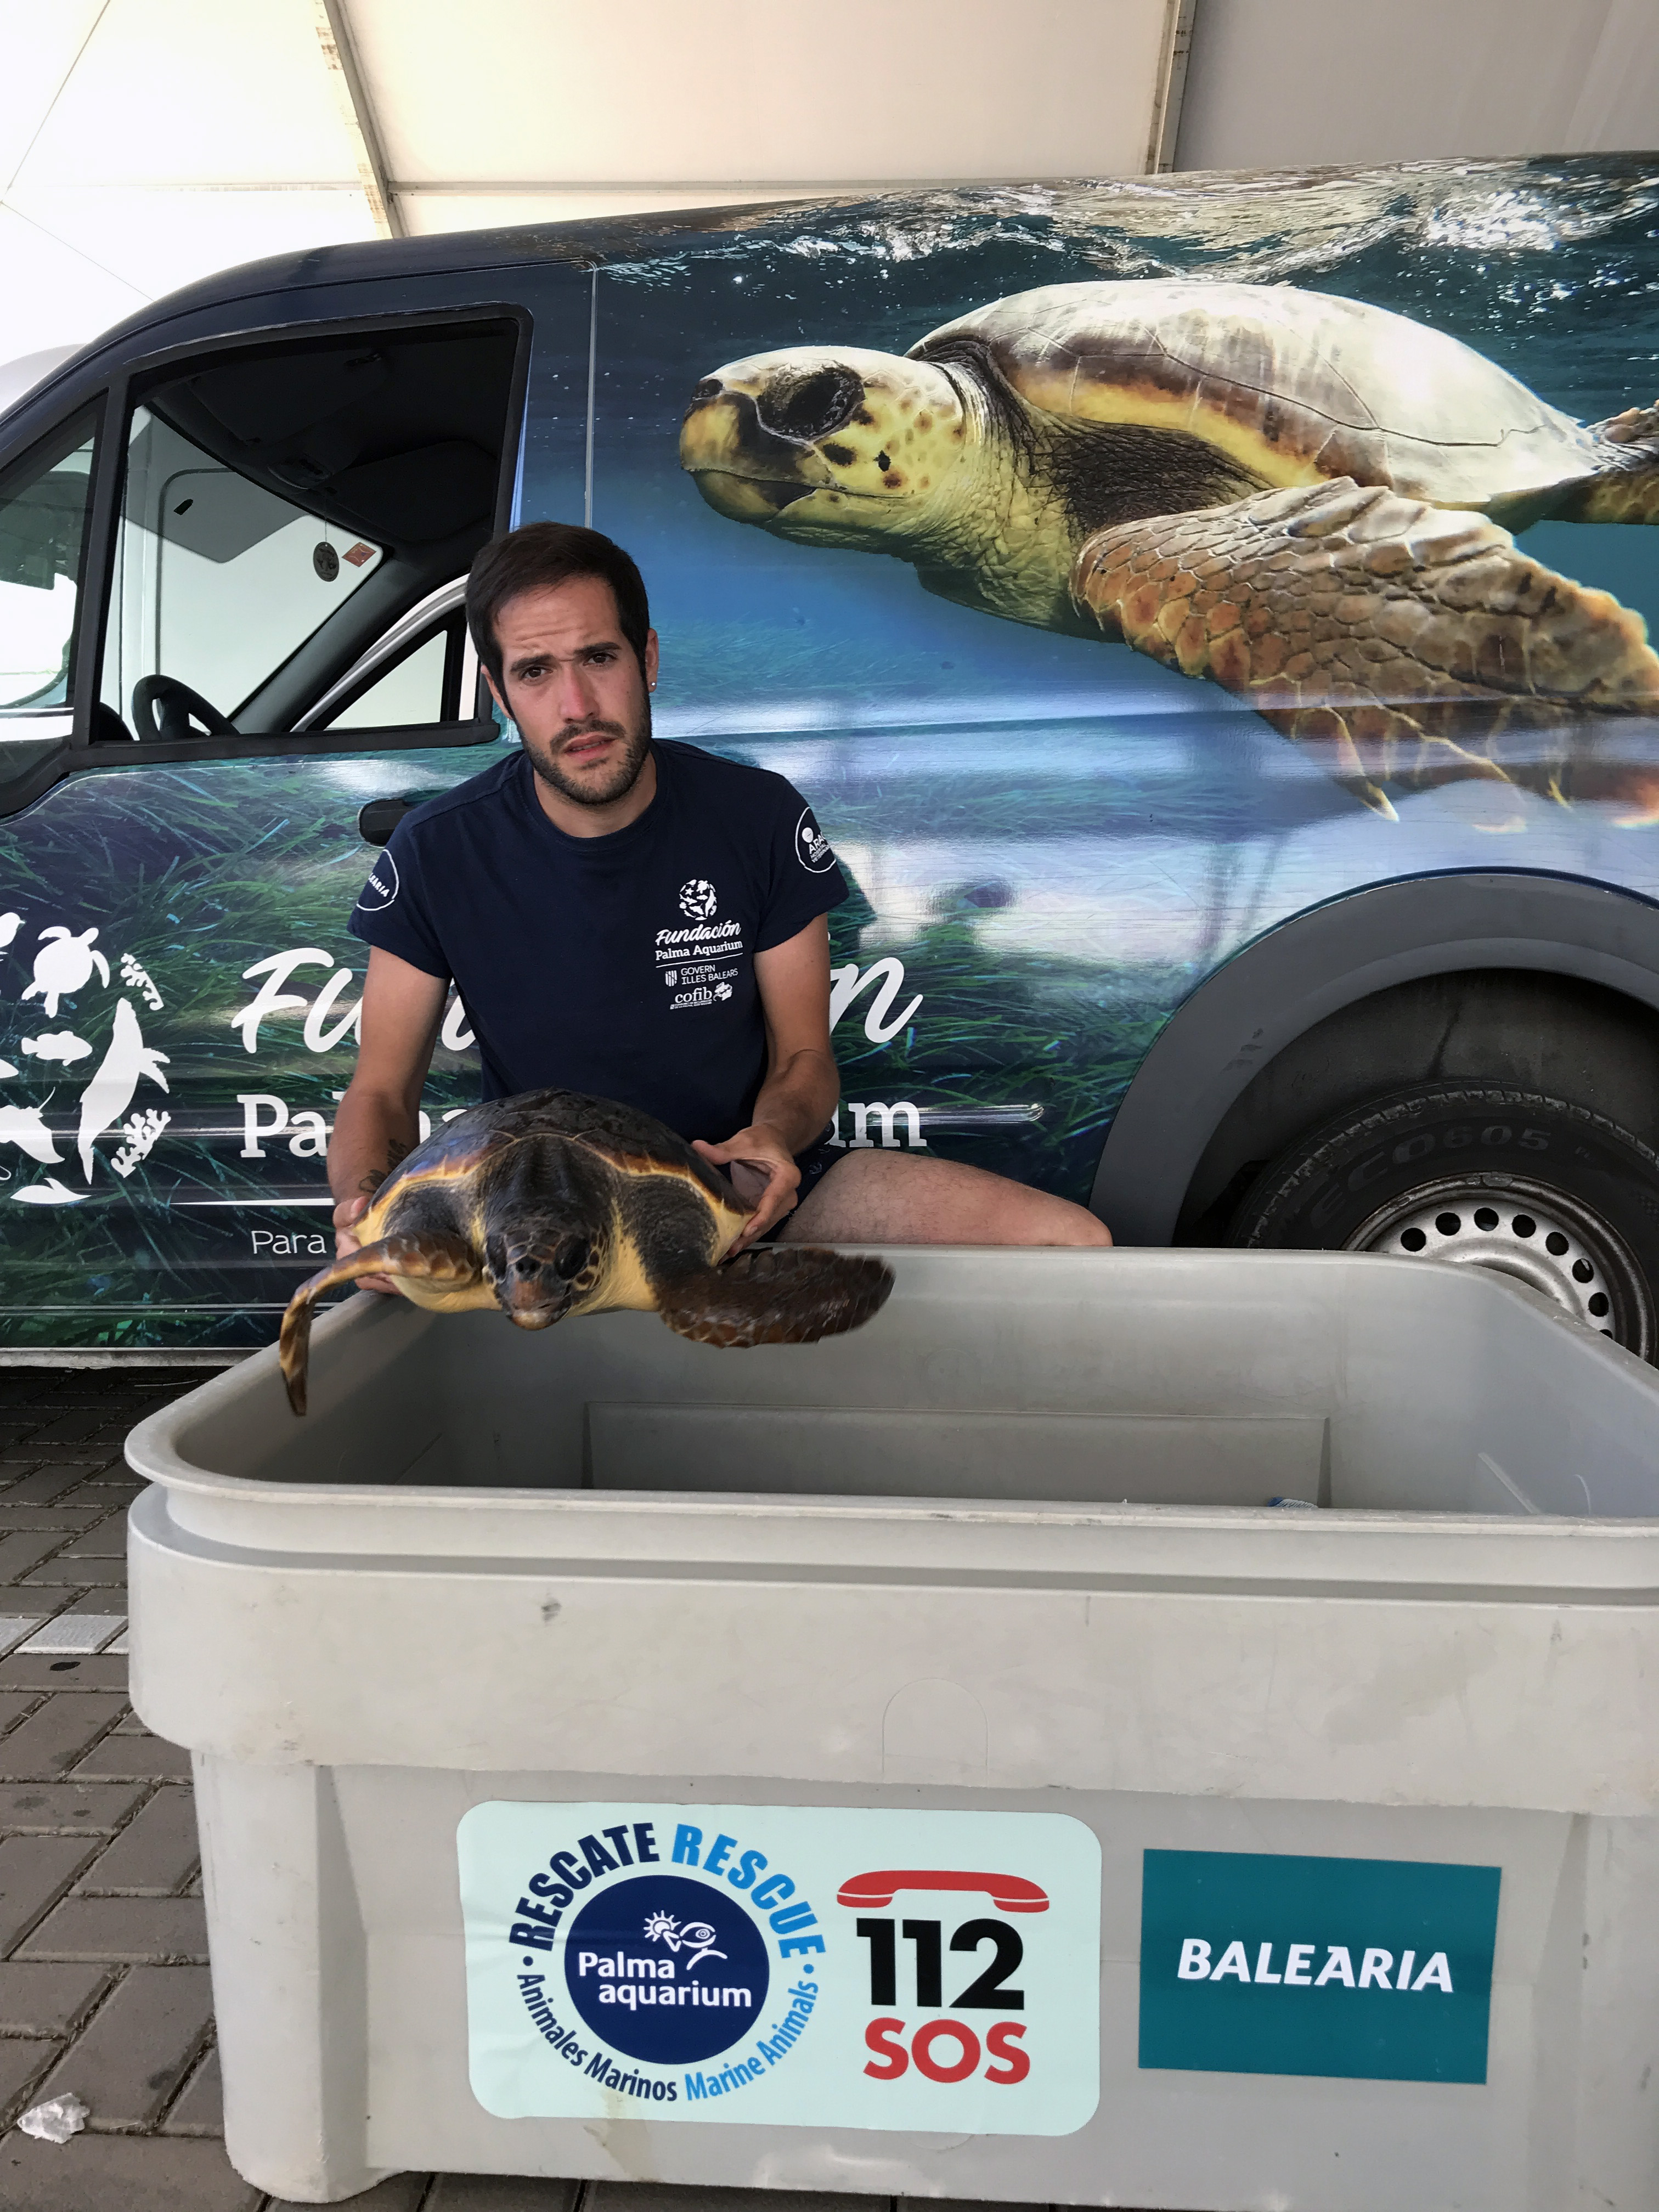 (Español) La Fundació Baleària facilitó el traslado de 173 tortugas en 2021 en el marco de su acuerdo con la Fundació Palma Aquarium